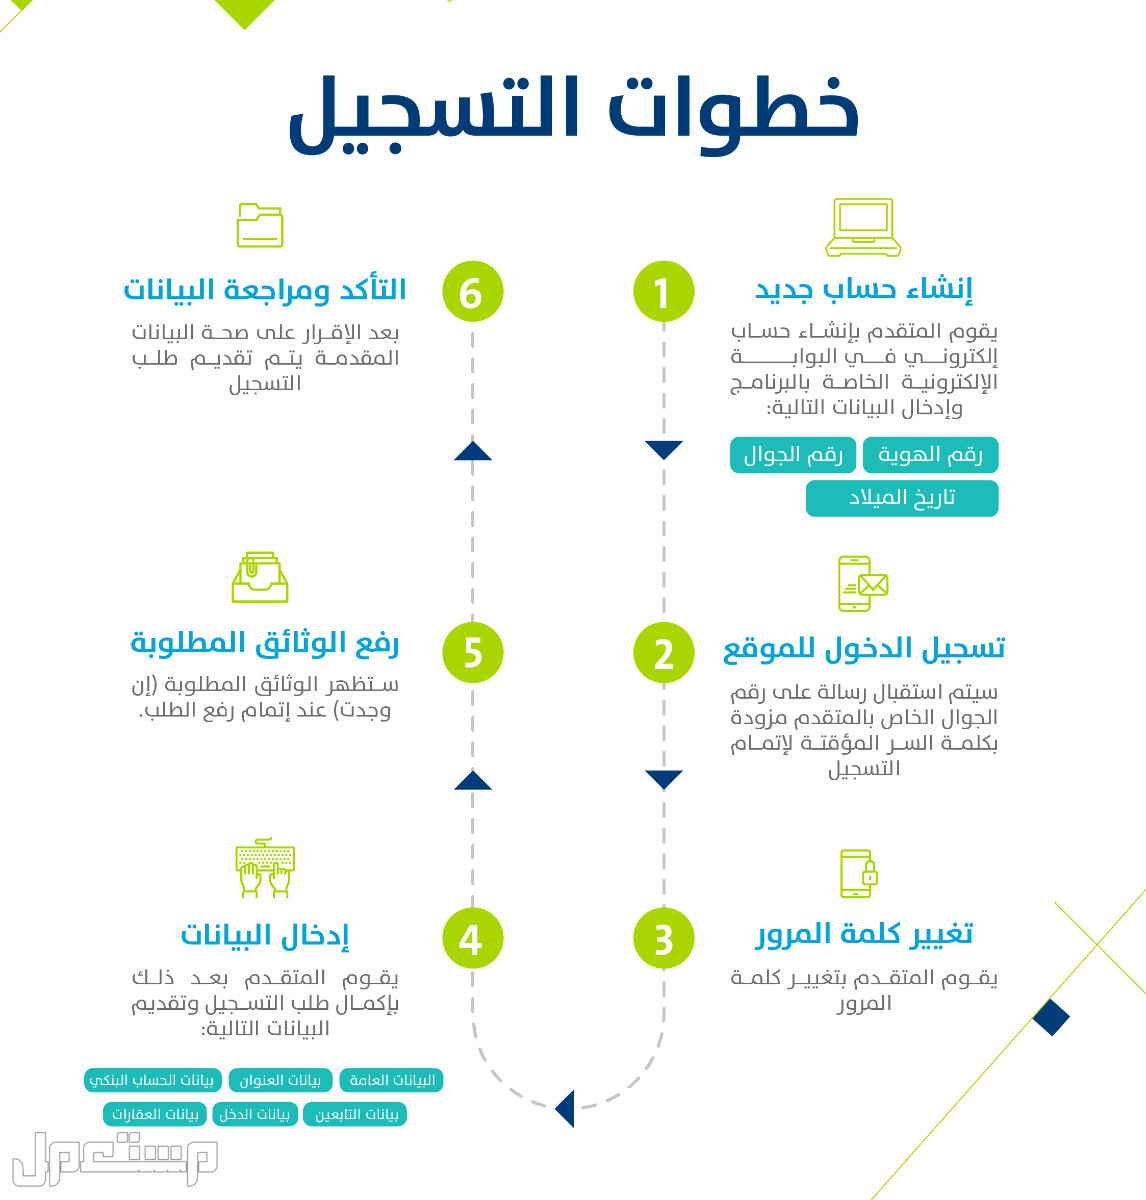 تعرف على كيفية التسجيل في حساب المواطن عقب تمديد الدعم الإضافي 1444 بالخطوات في الإمارات العربية المتحدة خطوات التسجيل